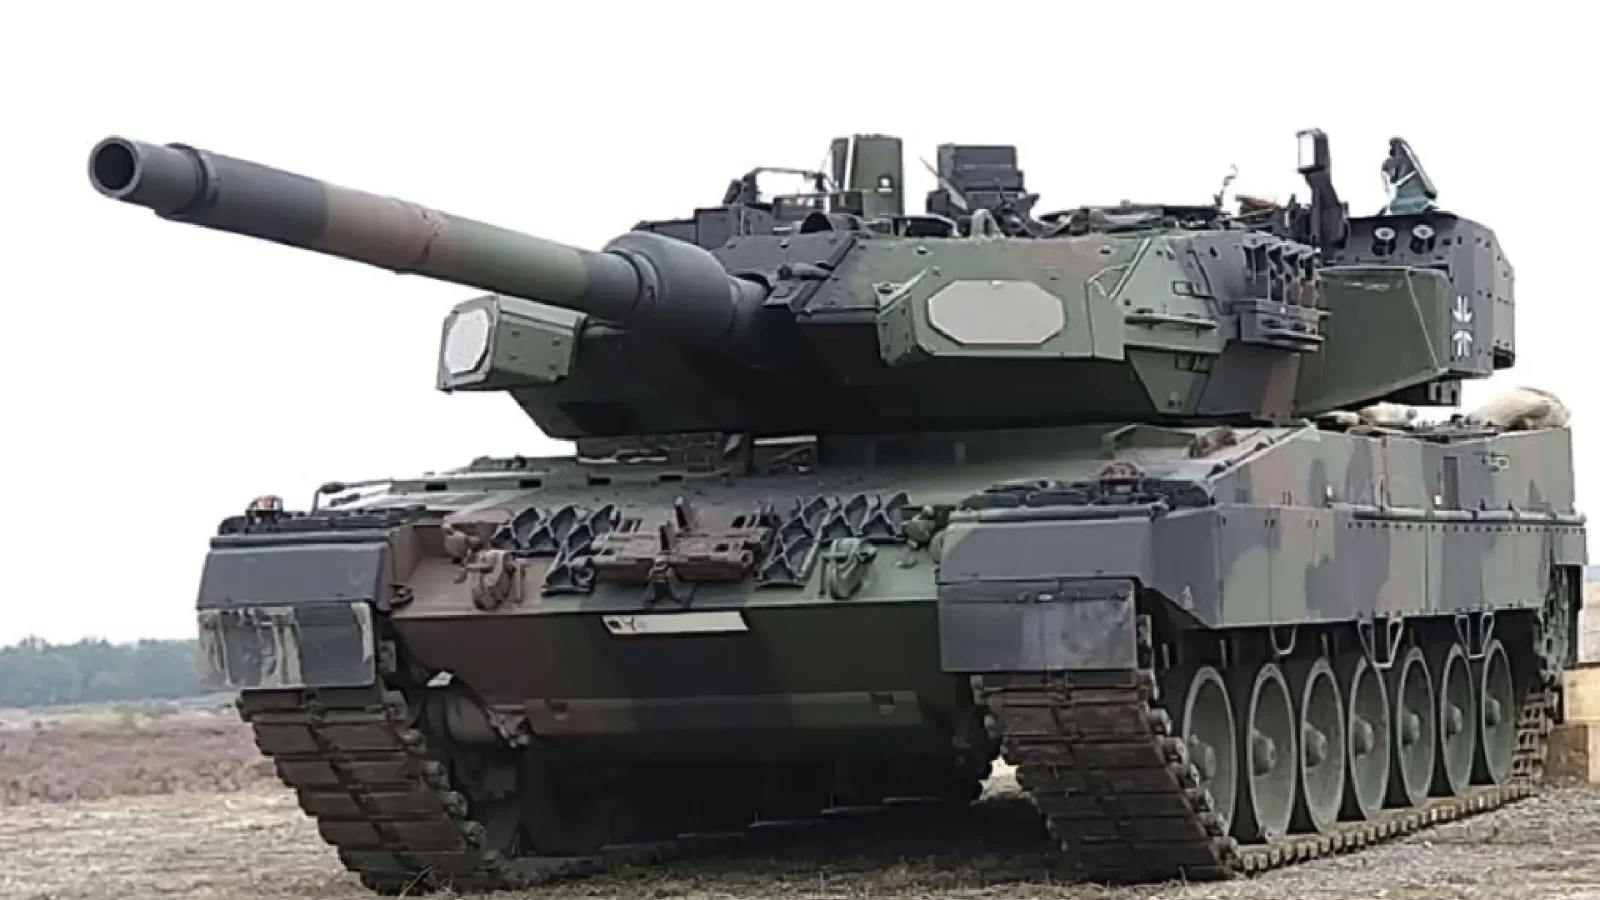 Spanish Leopard 2 Tanks En Route to Ukraine, defense minister confirms